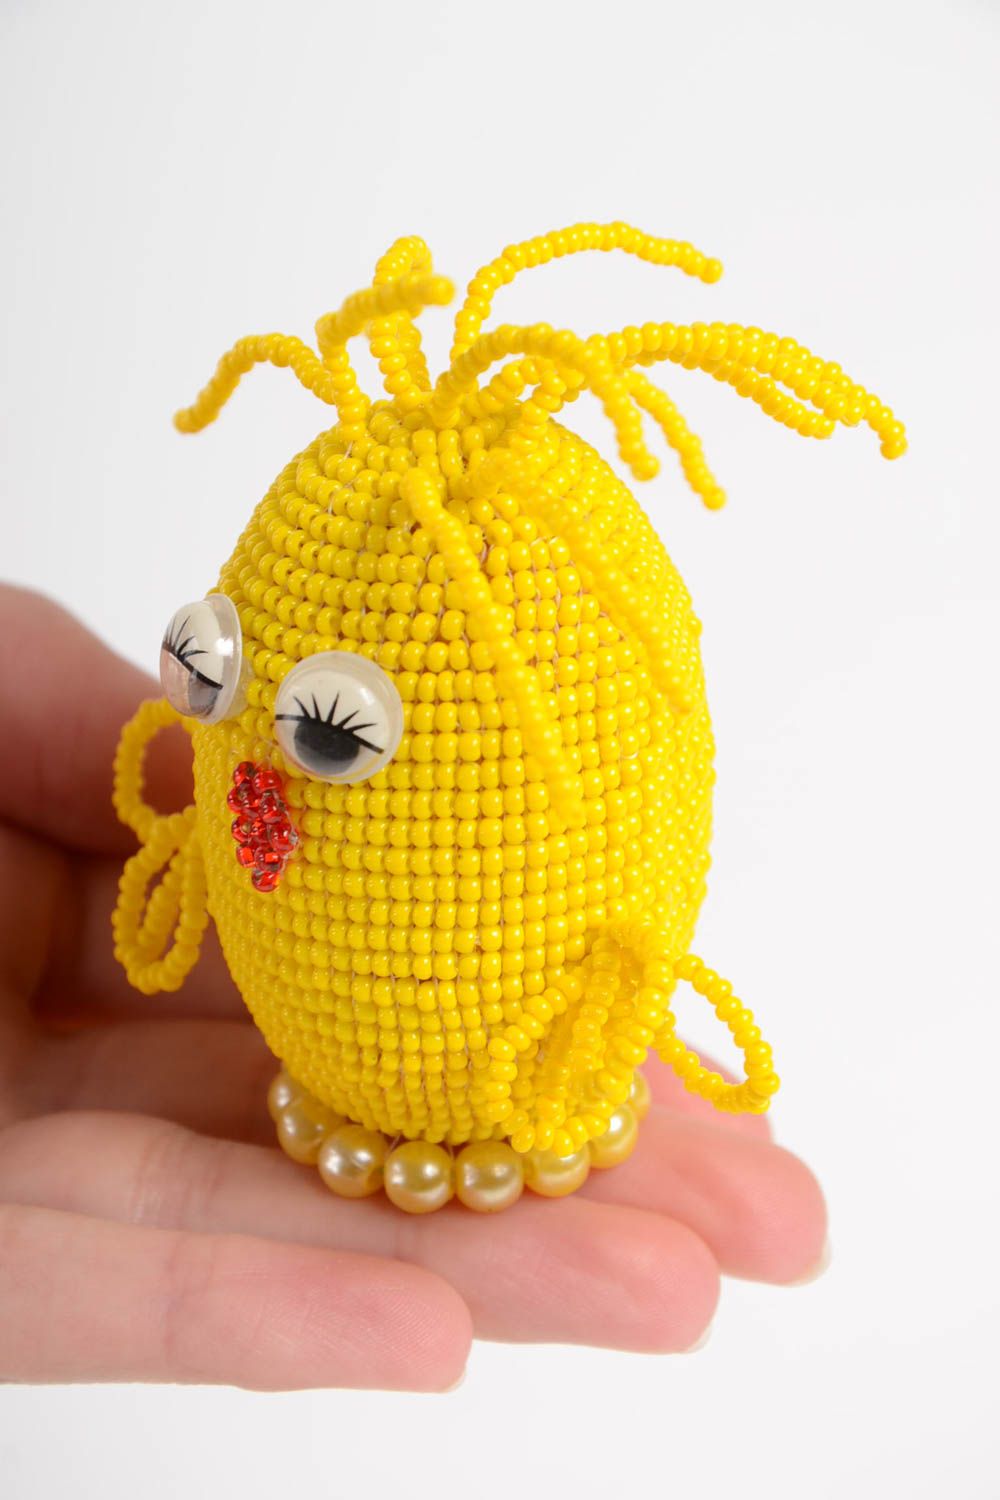 Декоративное яйцо из бисера в виде цыпленка желтое яркое небольшое ручной работы фото 4